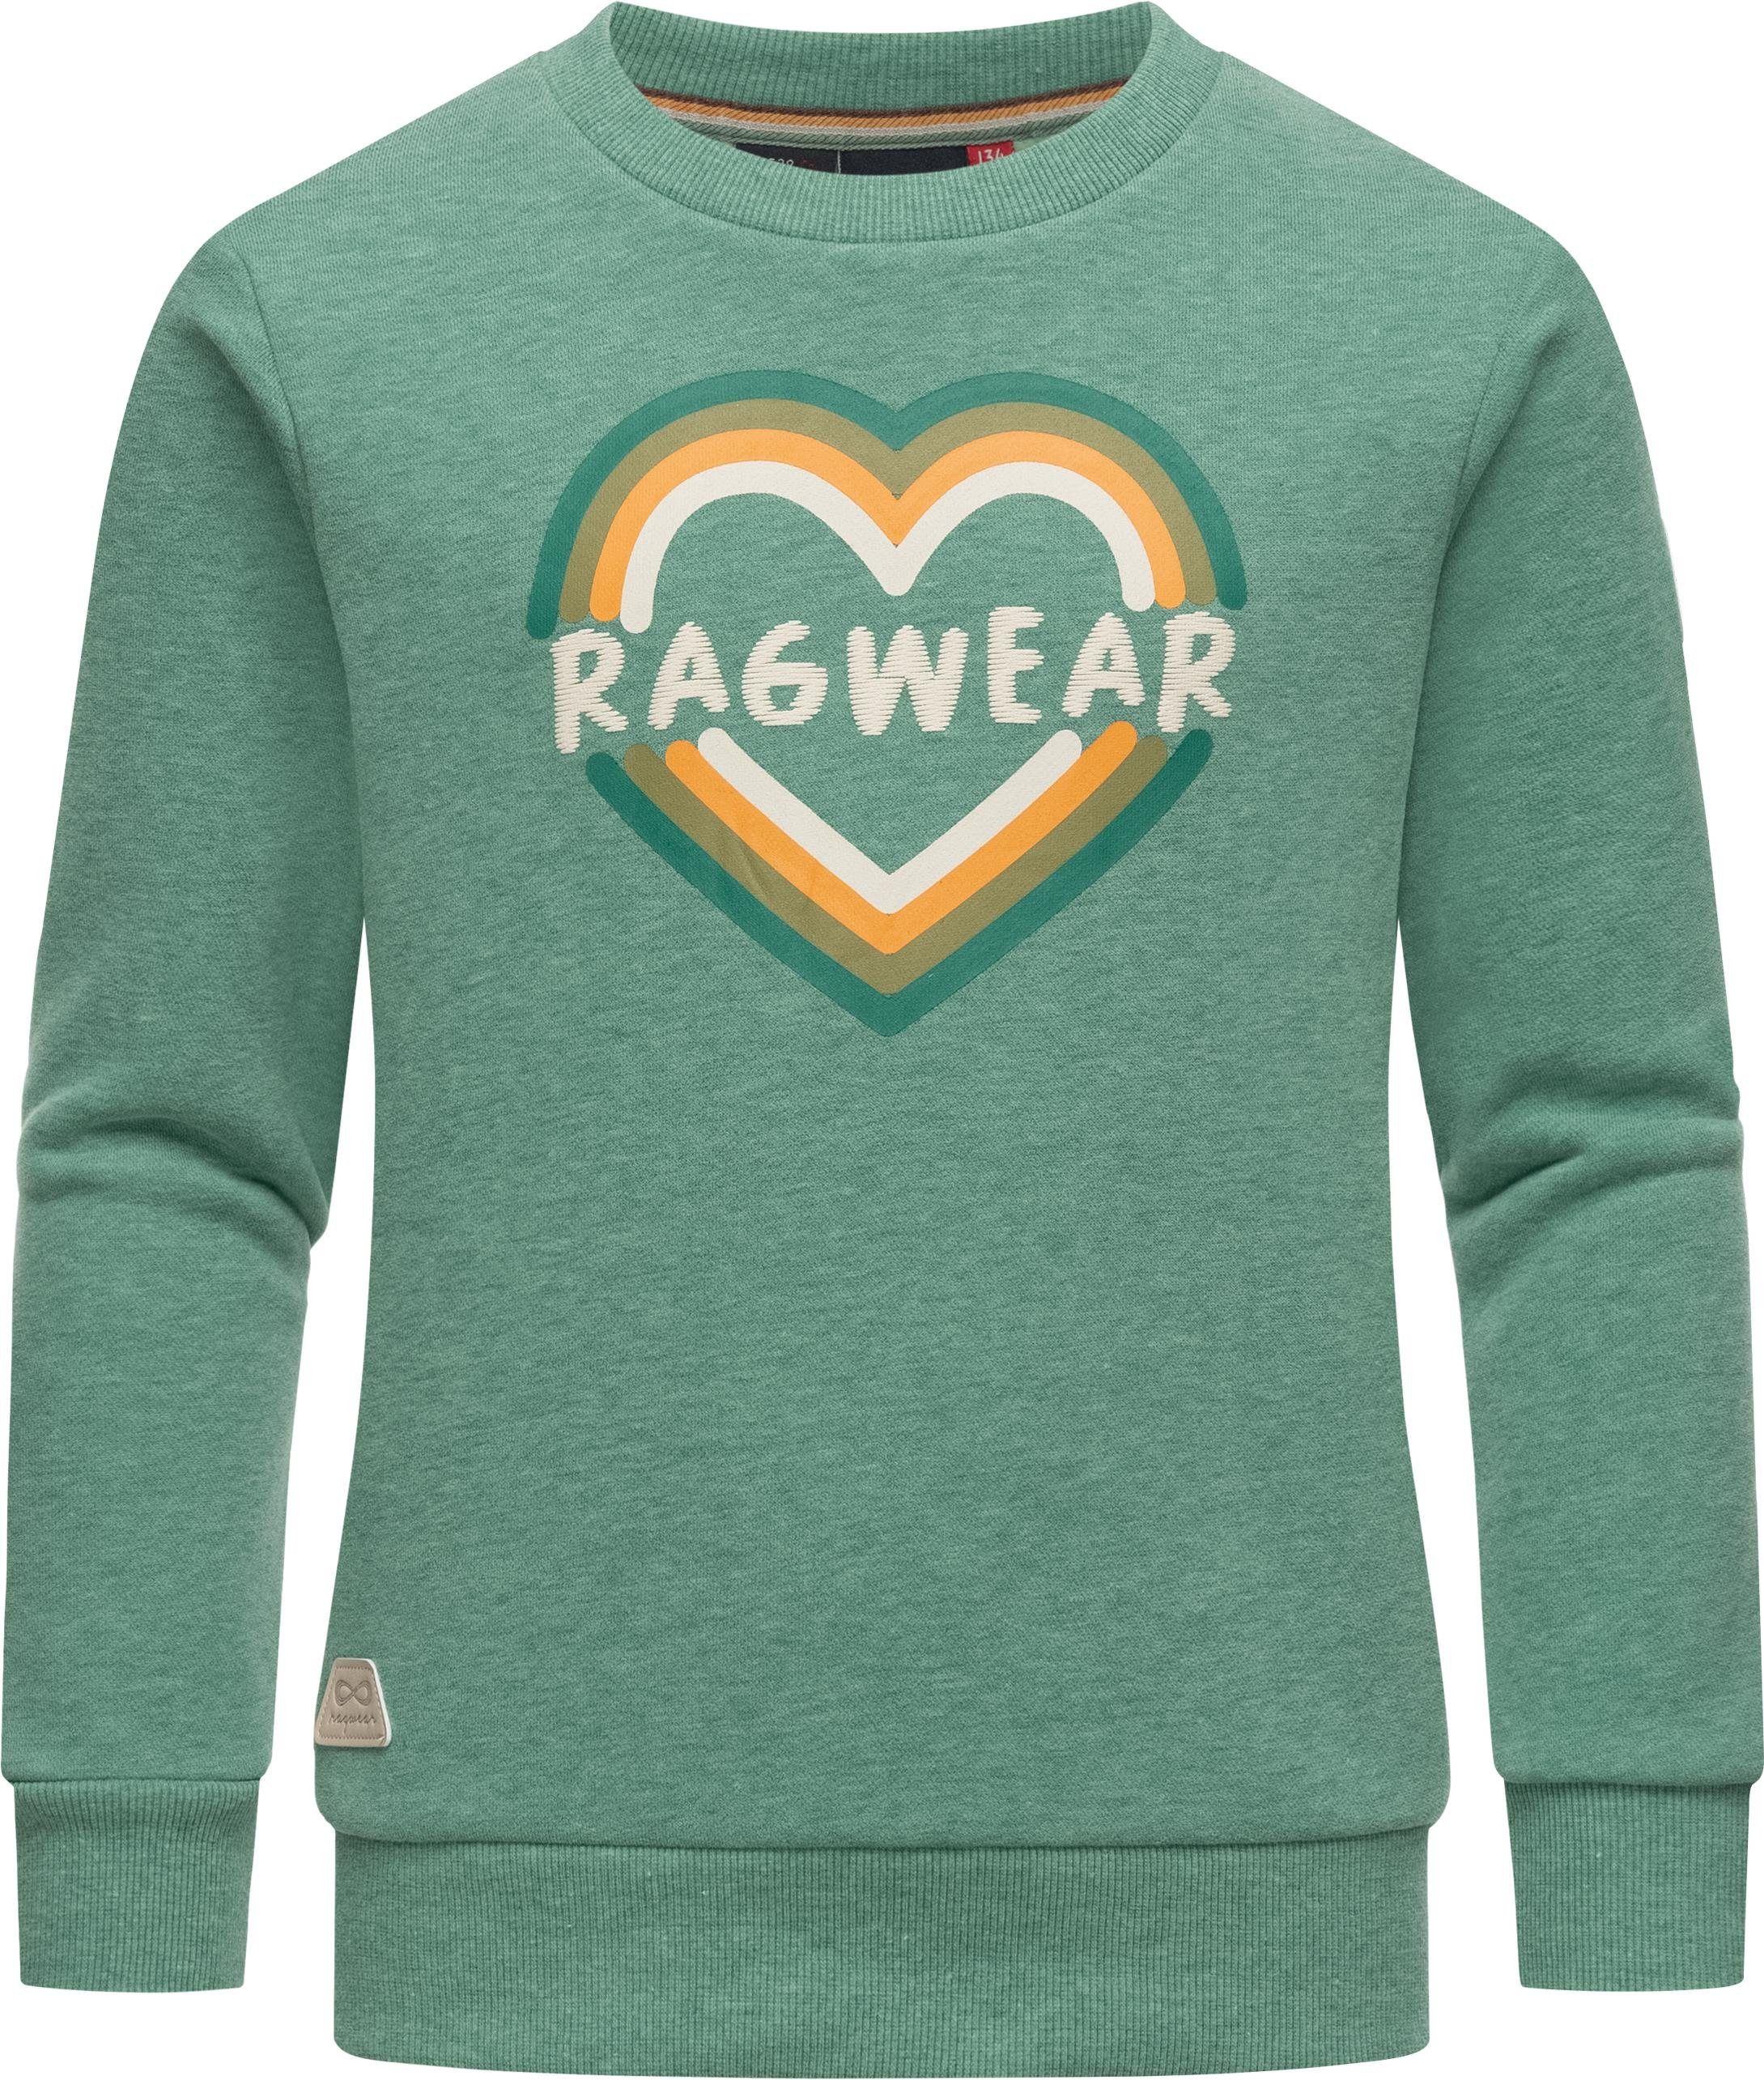 Ragwear Sweater Evka Print stylisches Mädchen Sweatshirt mit coolem Logo Print mint